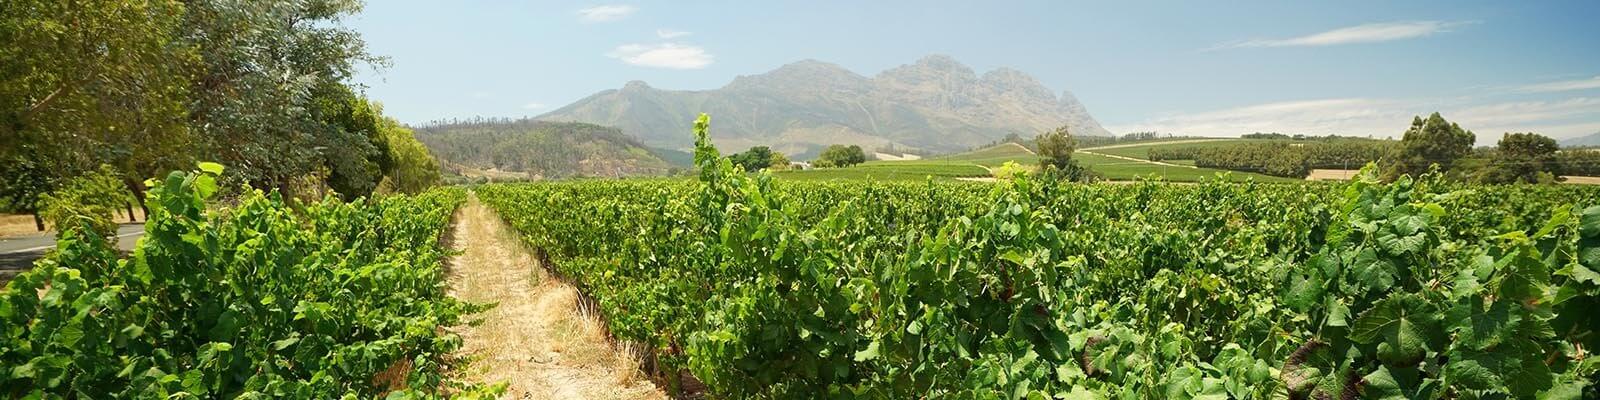 Unsere Kollektion von Südafrika - Finden Sie diese bei Onshore Cellars Ihrem Yacht-Weinlieferanten